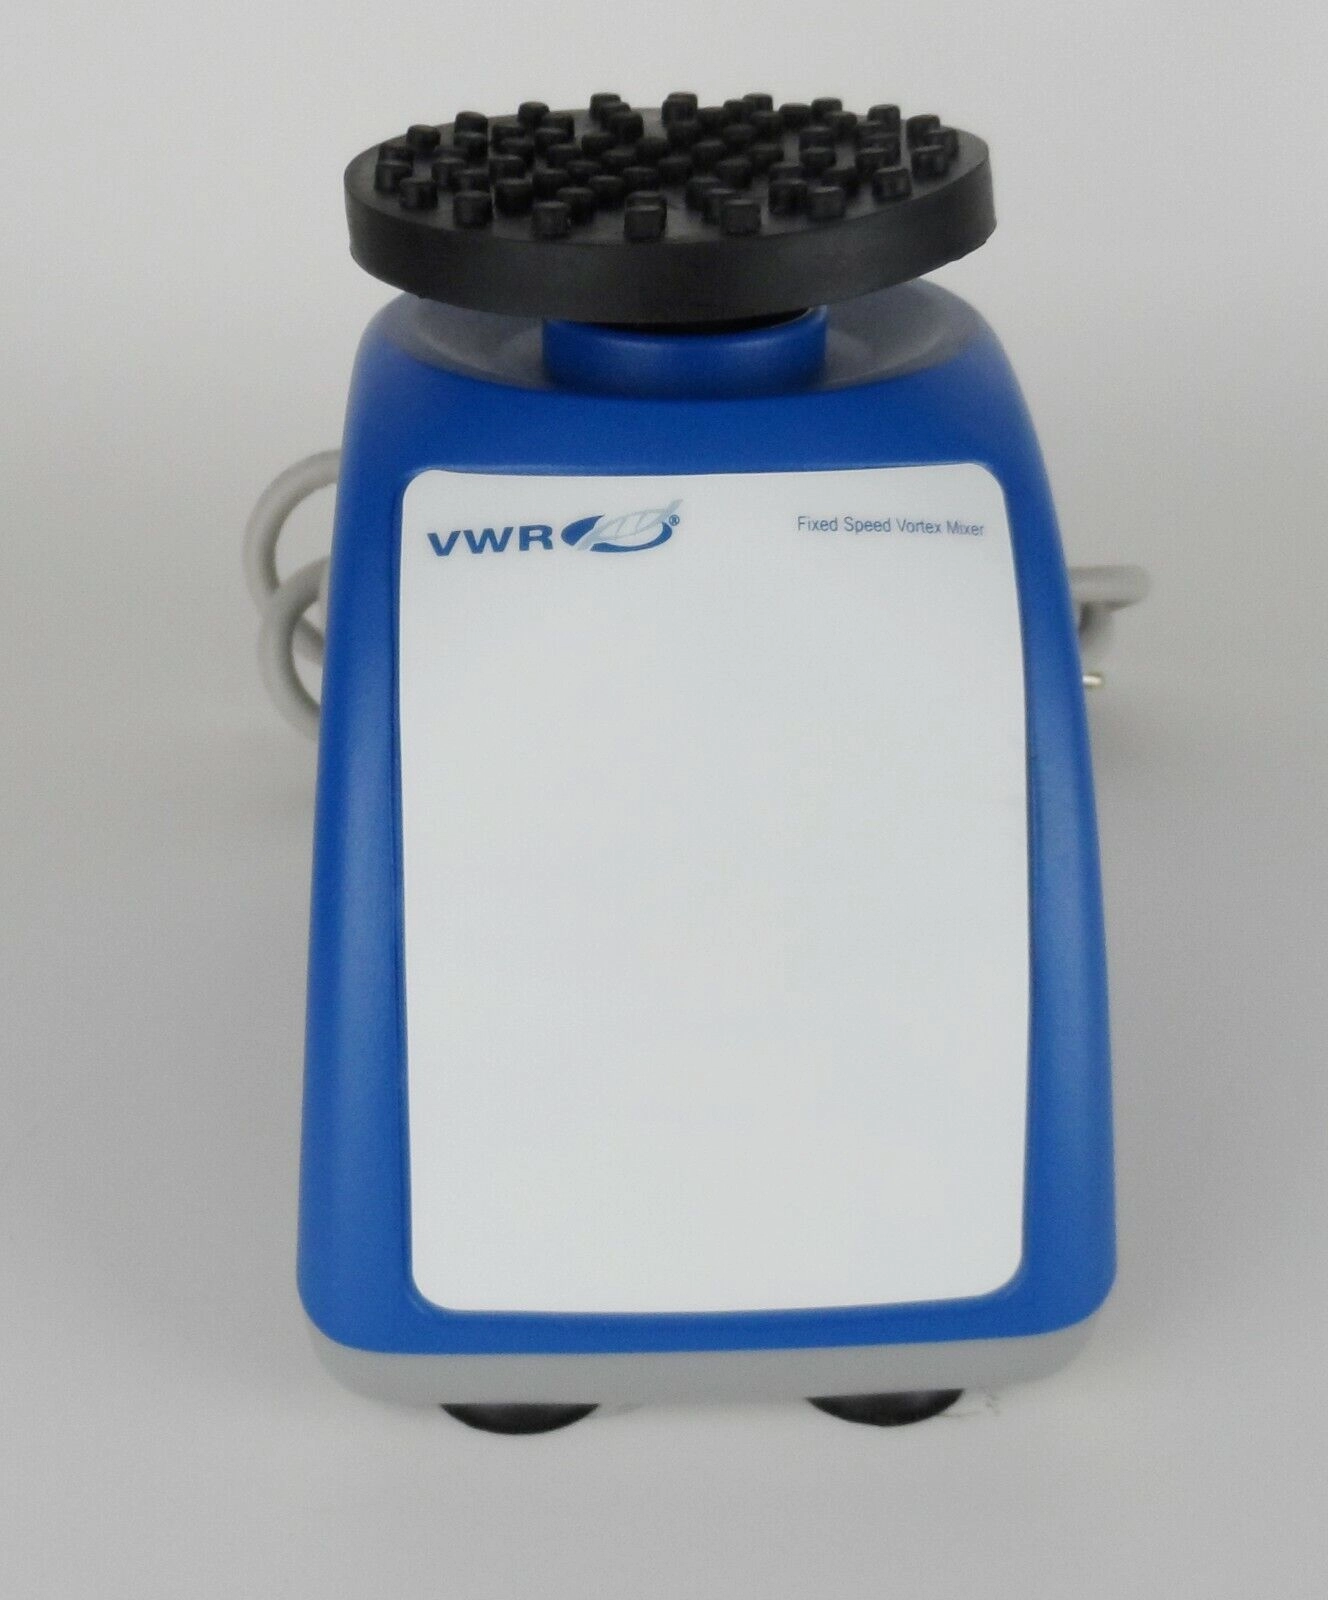 VWR N01053-834 Fixed Speed Vortex Mixer